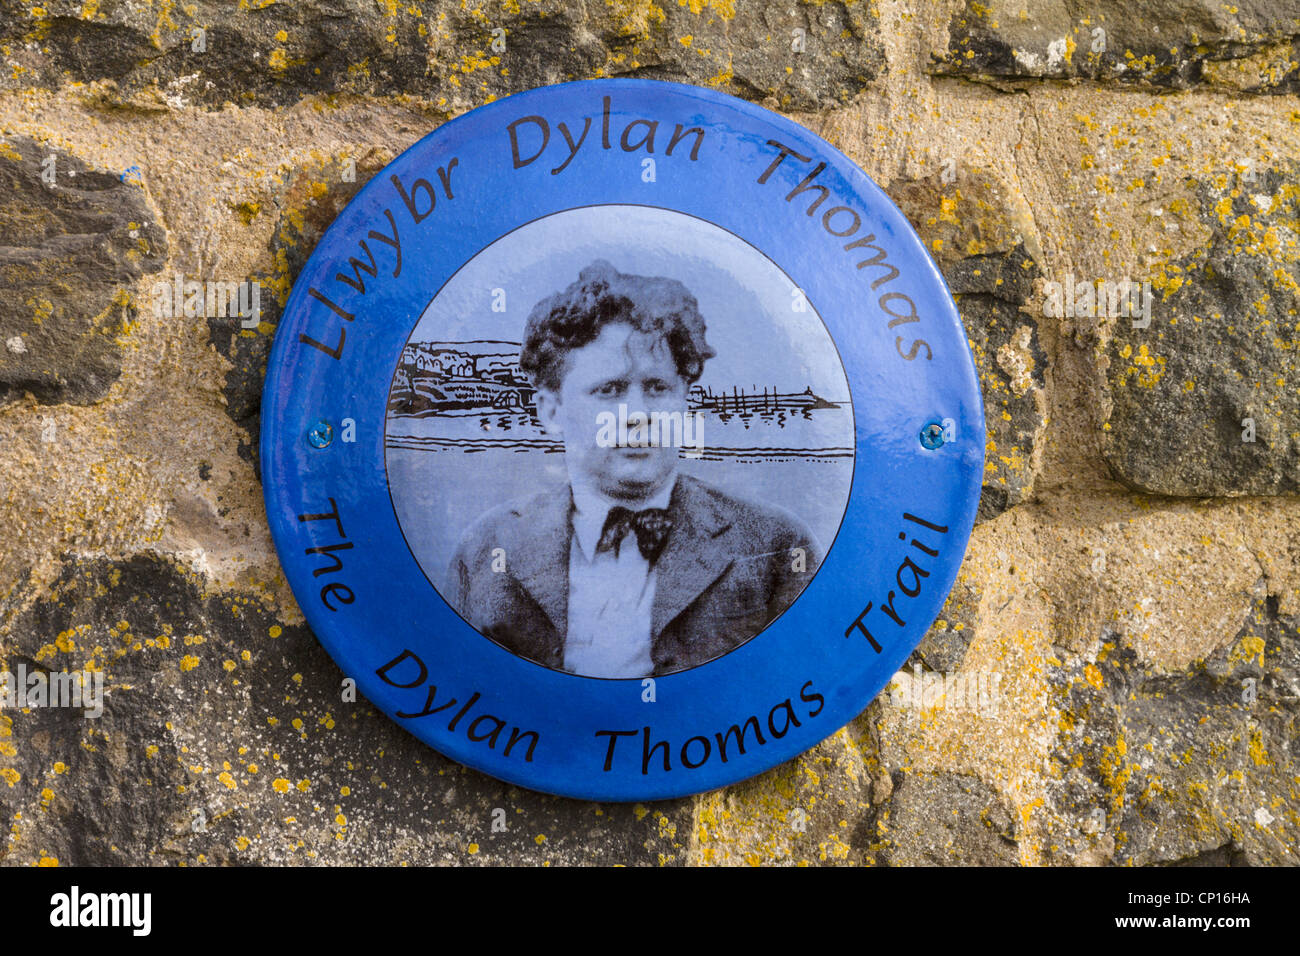 Dylan Thomas Trail plaque, Aberaeron, Wales Stock Photo